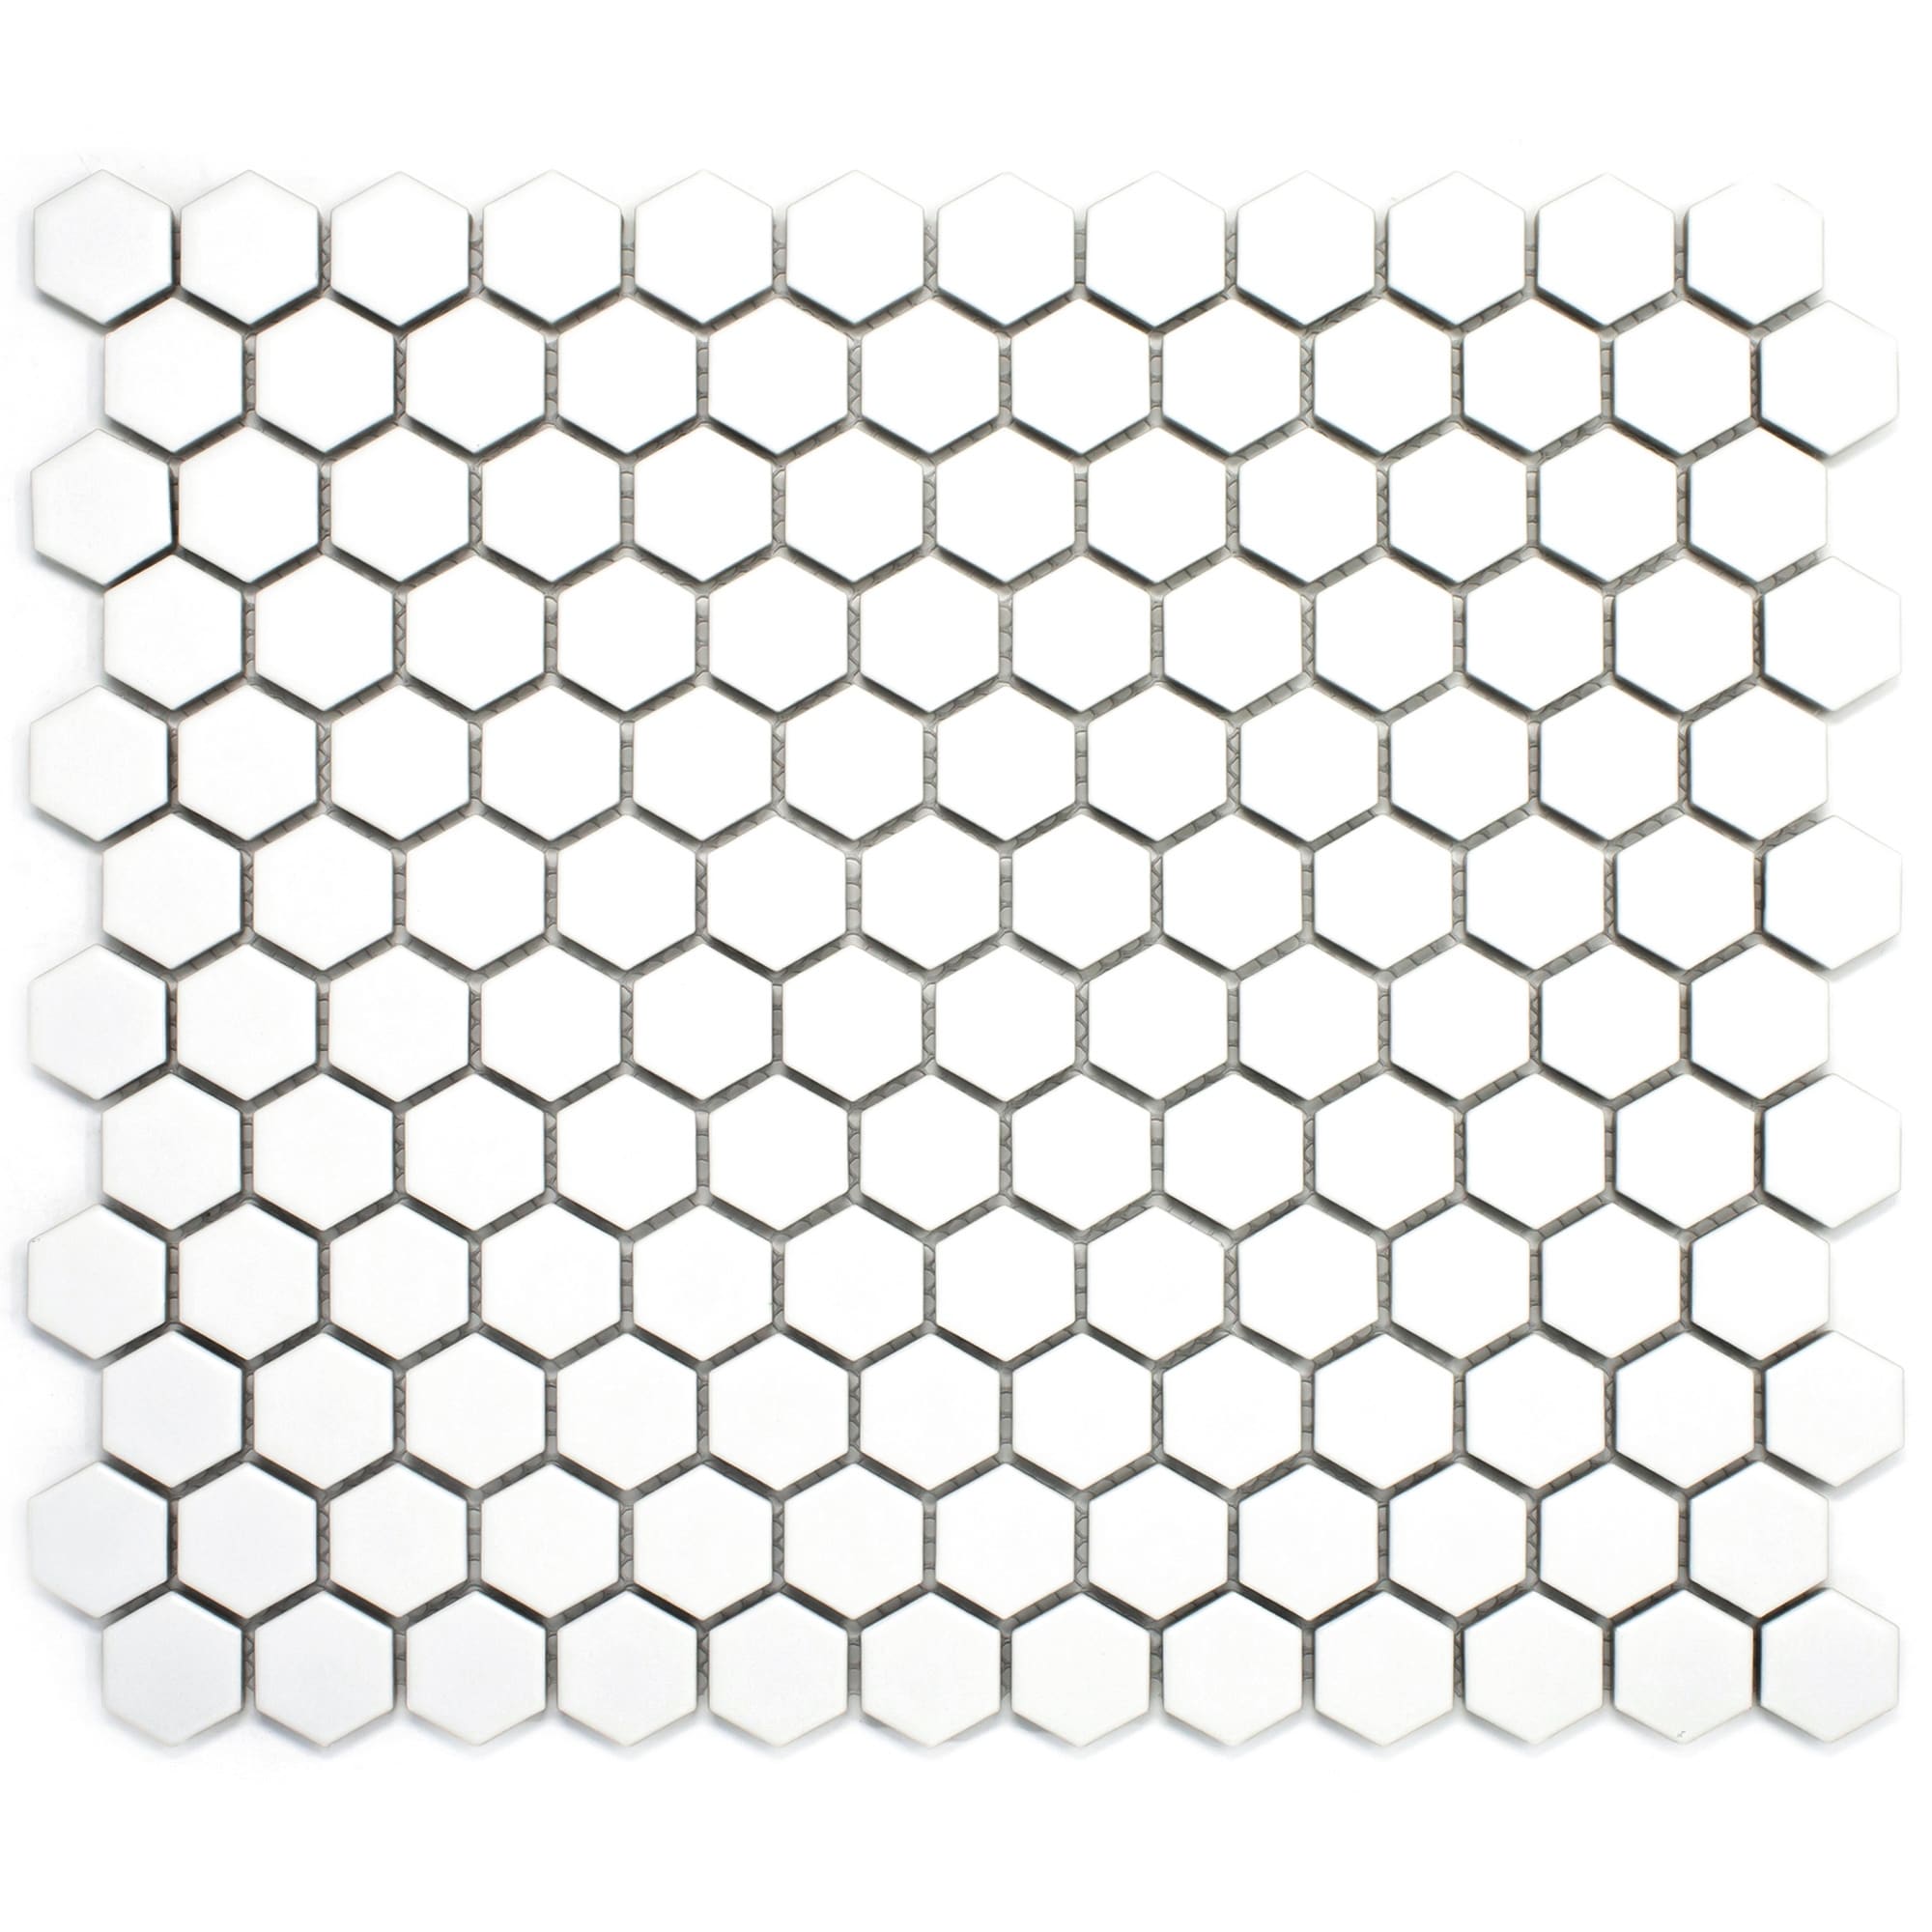 Tilegen Tiny 1 X 1 Hexagon Porcelain Tile In White Floor And Wall Tile